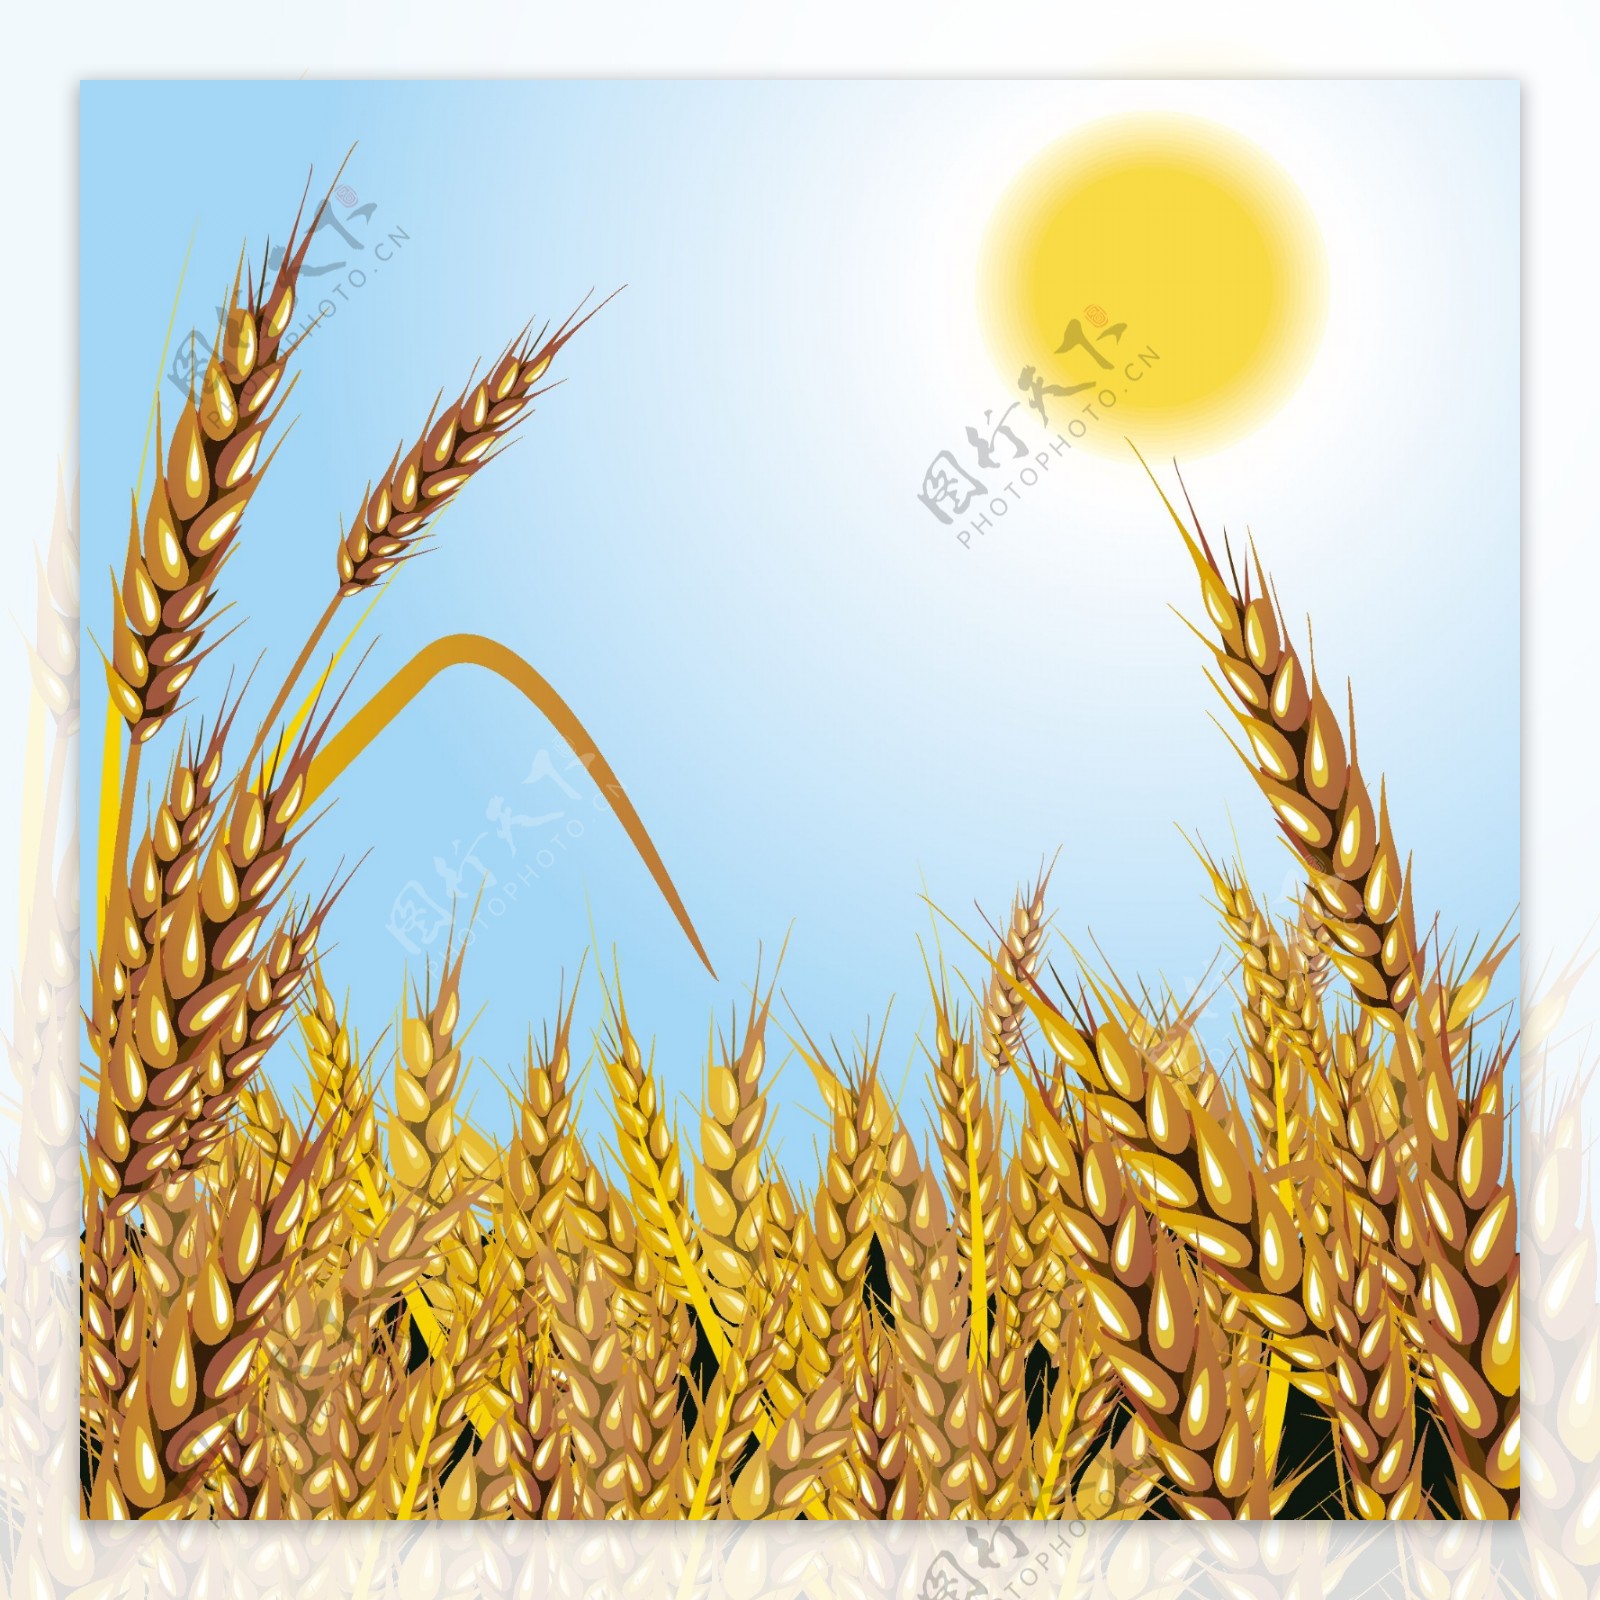 小麦成熟矢量素材